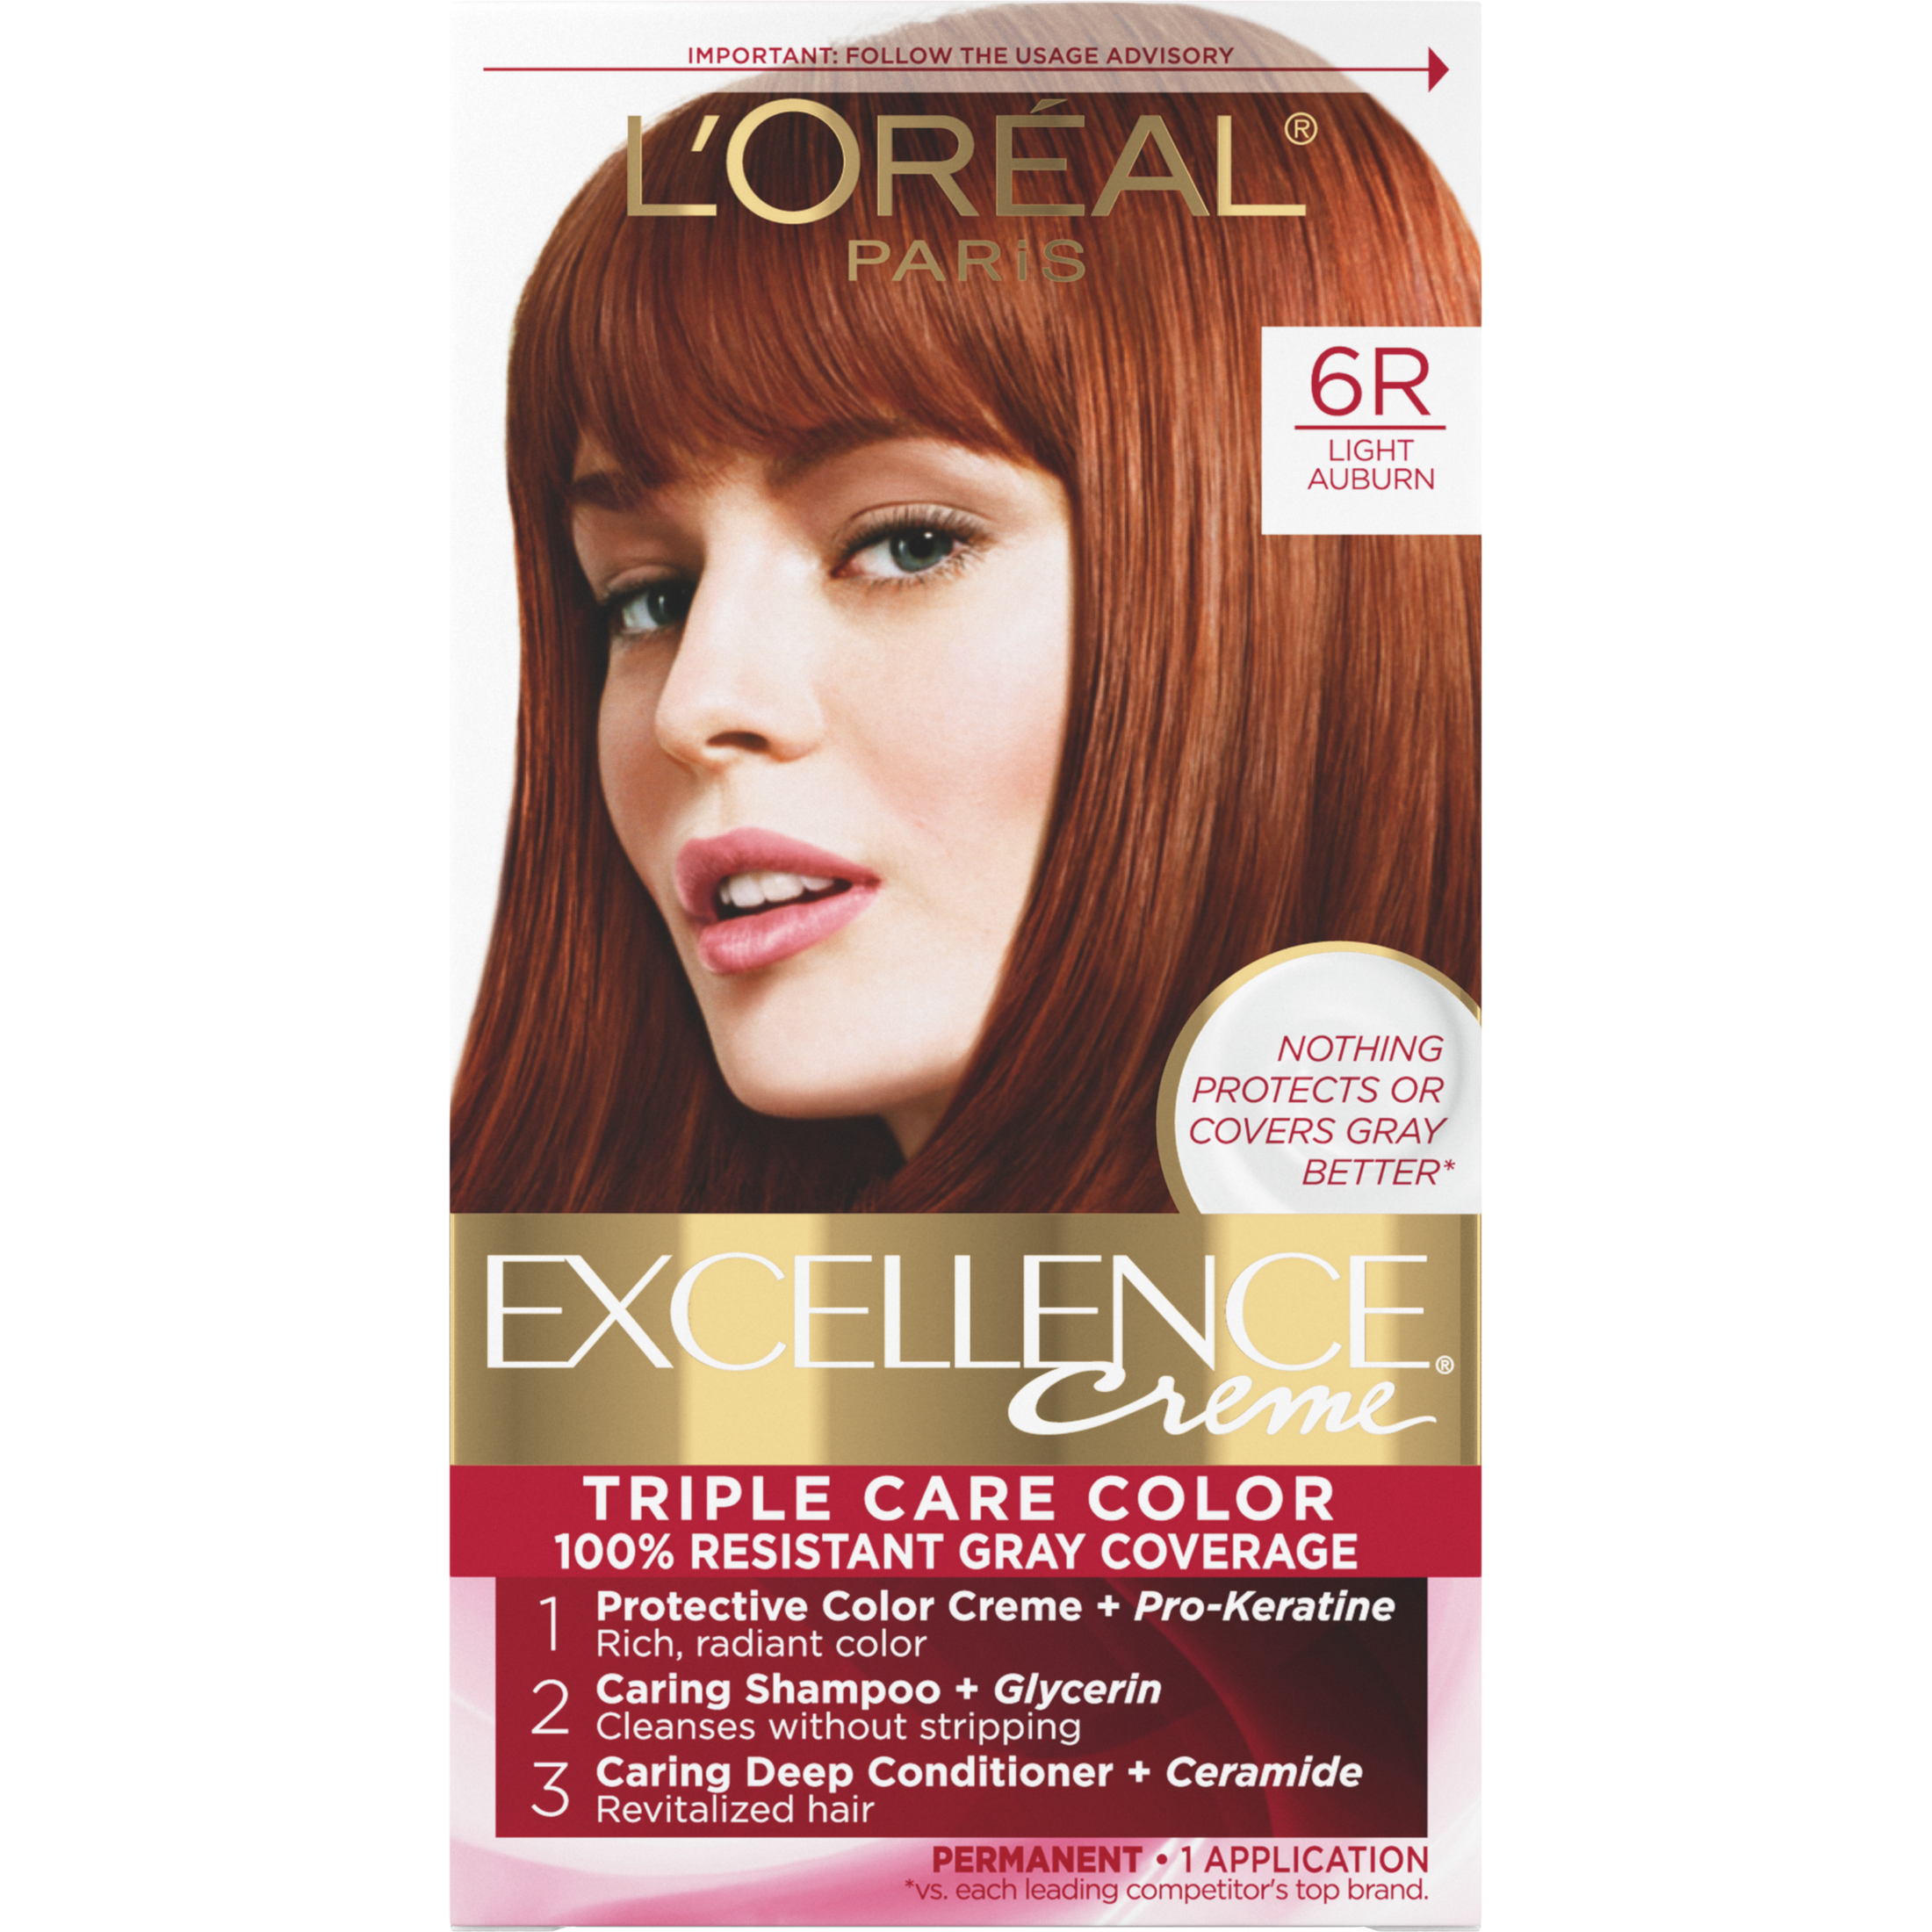 L'Oreal Paris Excellence Creme Permanent Hair Color, 6R Light Auburn - image 1 of 8